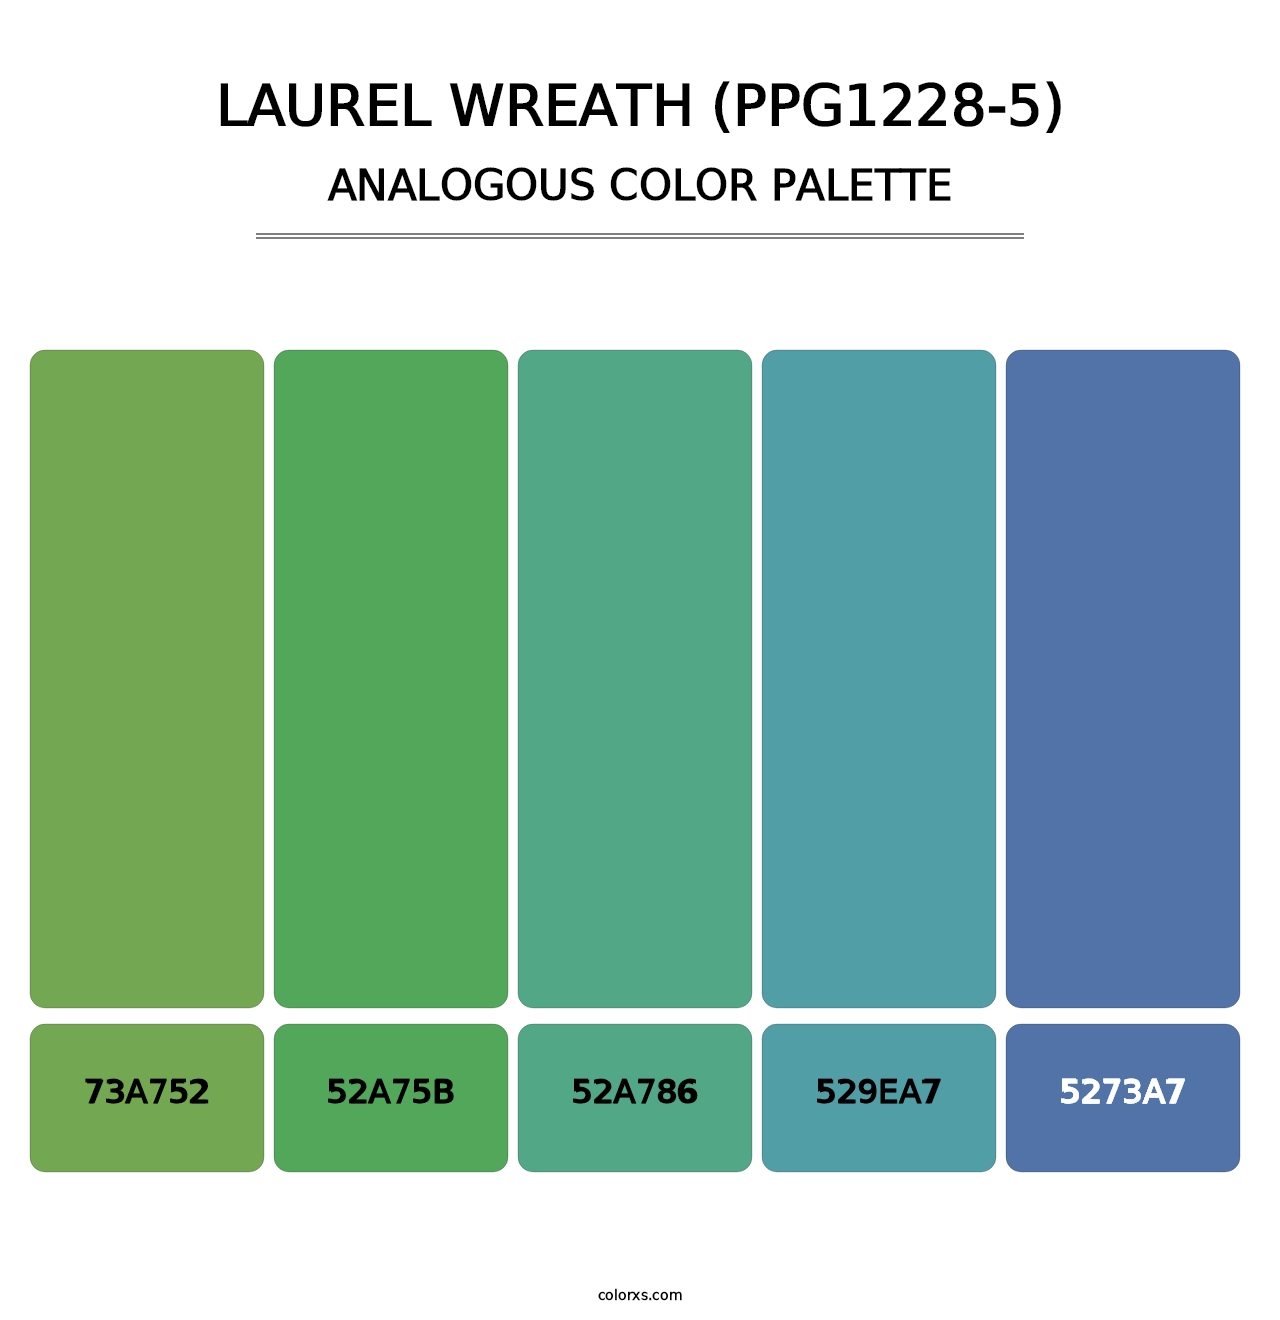 Laurel Wreath (PPG1228-5) - Analogous Color Palette